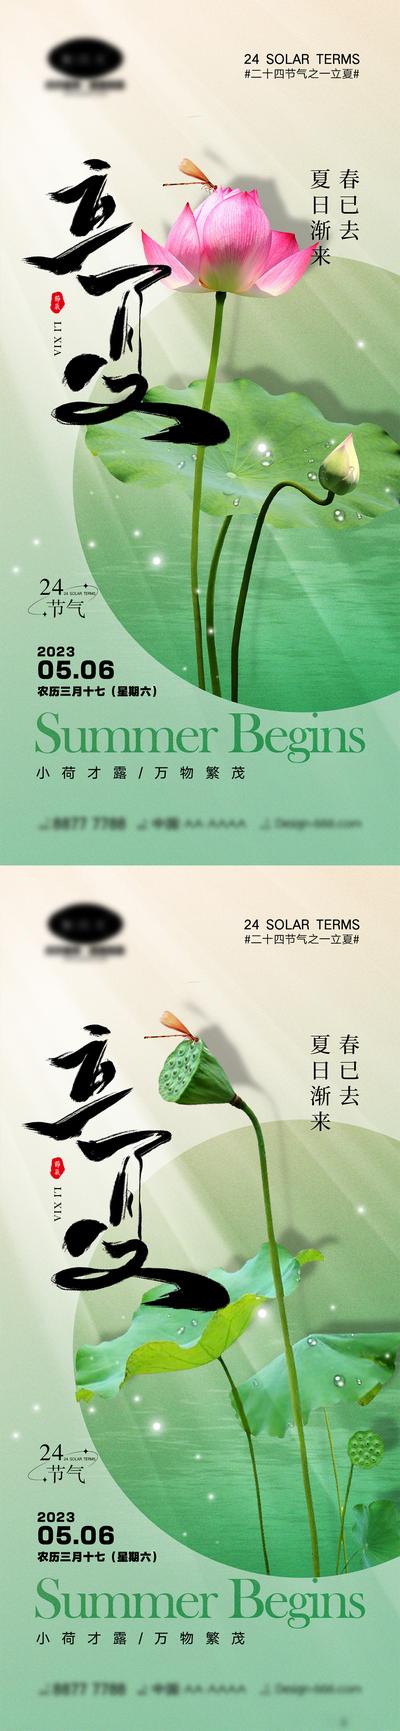 南门网 海报 中式 二十四节气 夏天 立夏 夏至 柳树 荷花 荷叶 蜻蜓 水墨